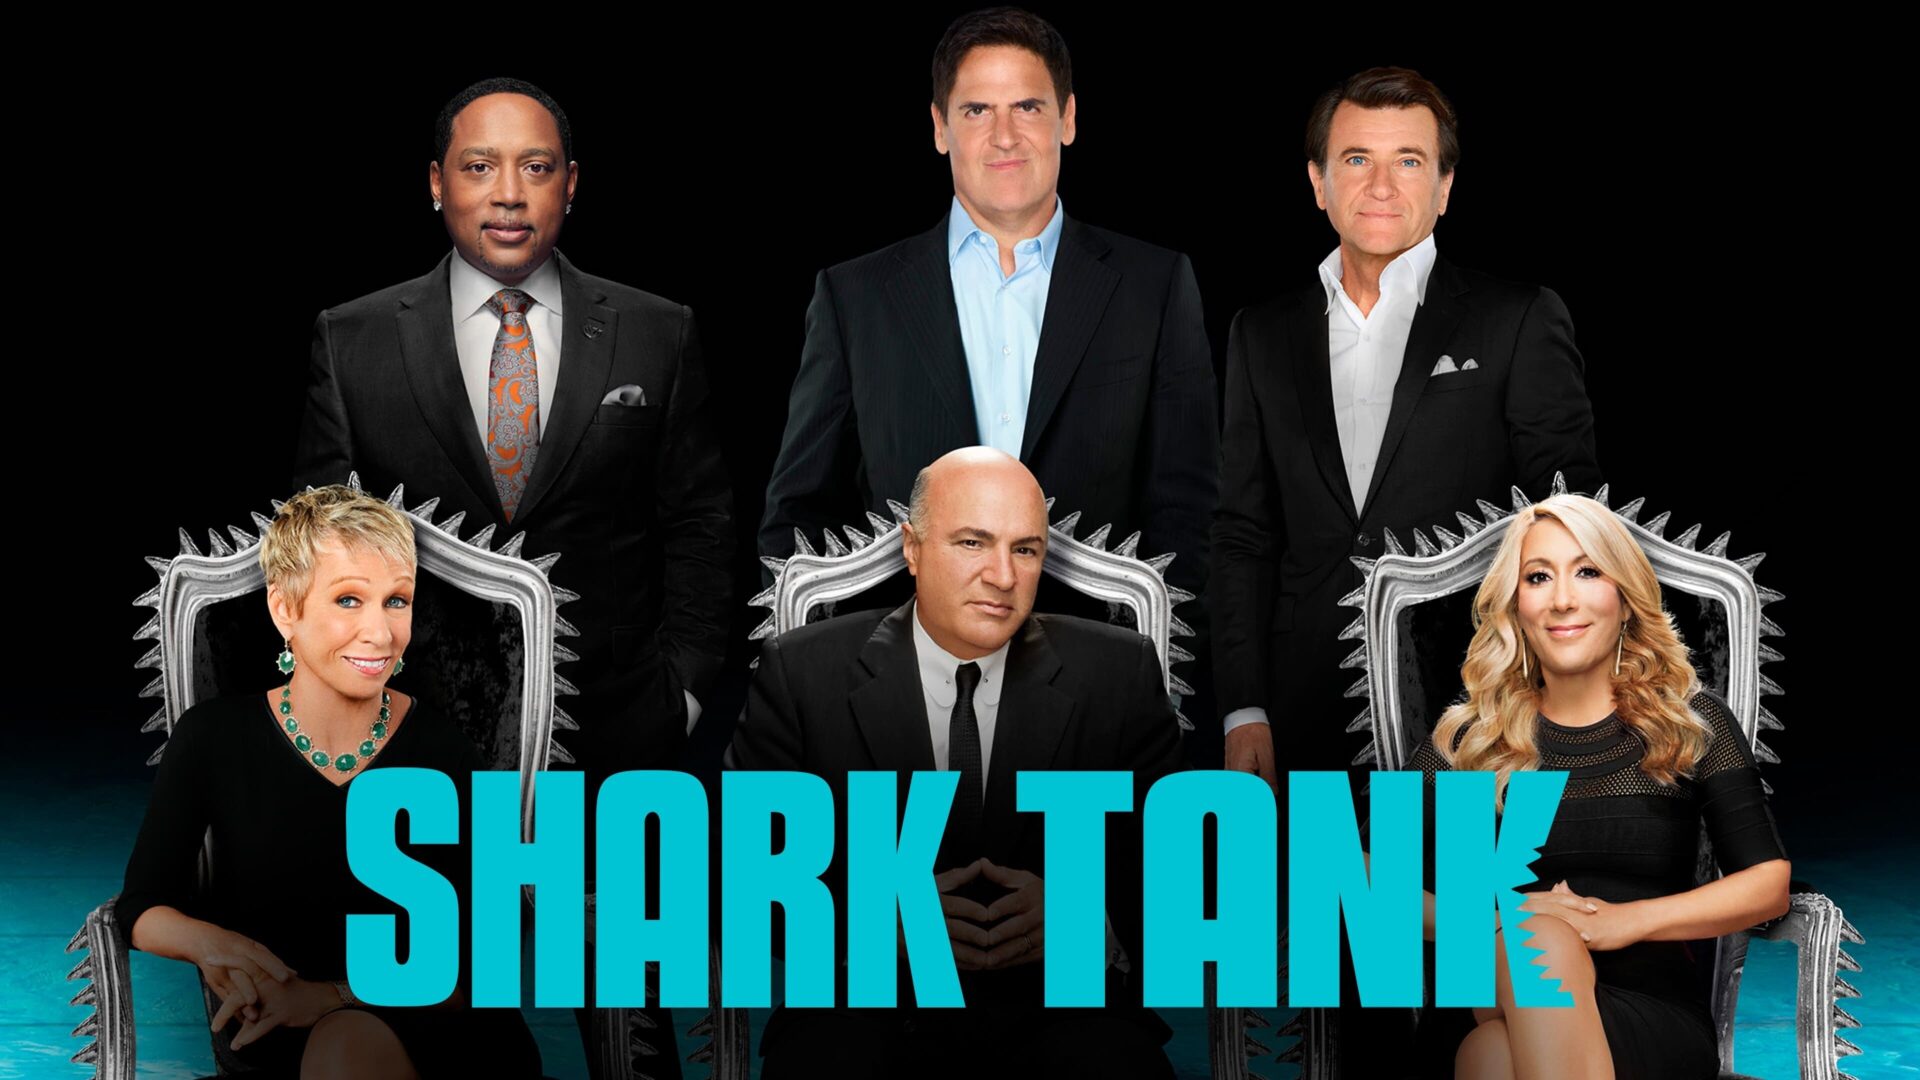 [S12/E1] Shark Tank Season 12 episode 1 Release Date, Watch Online